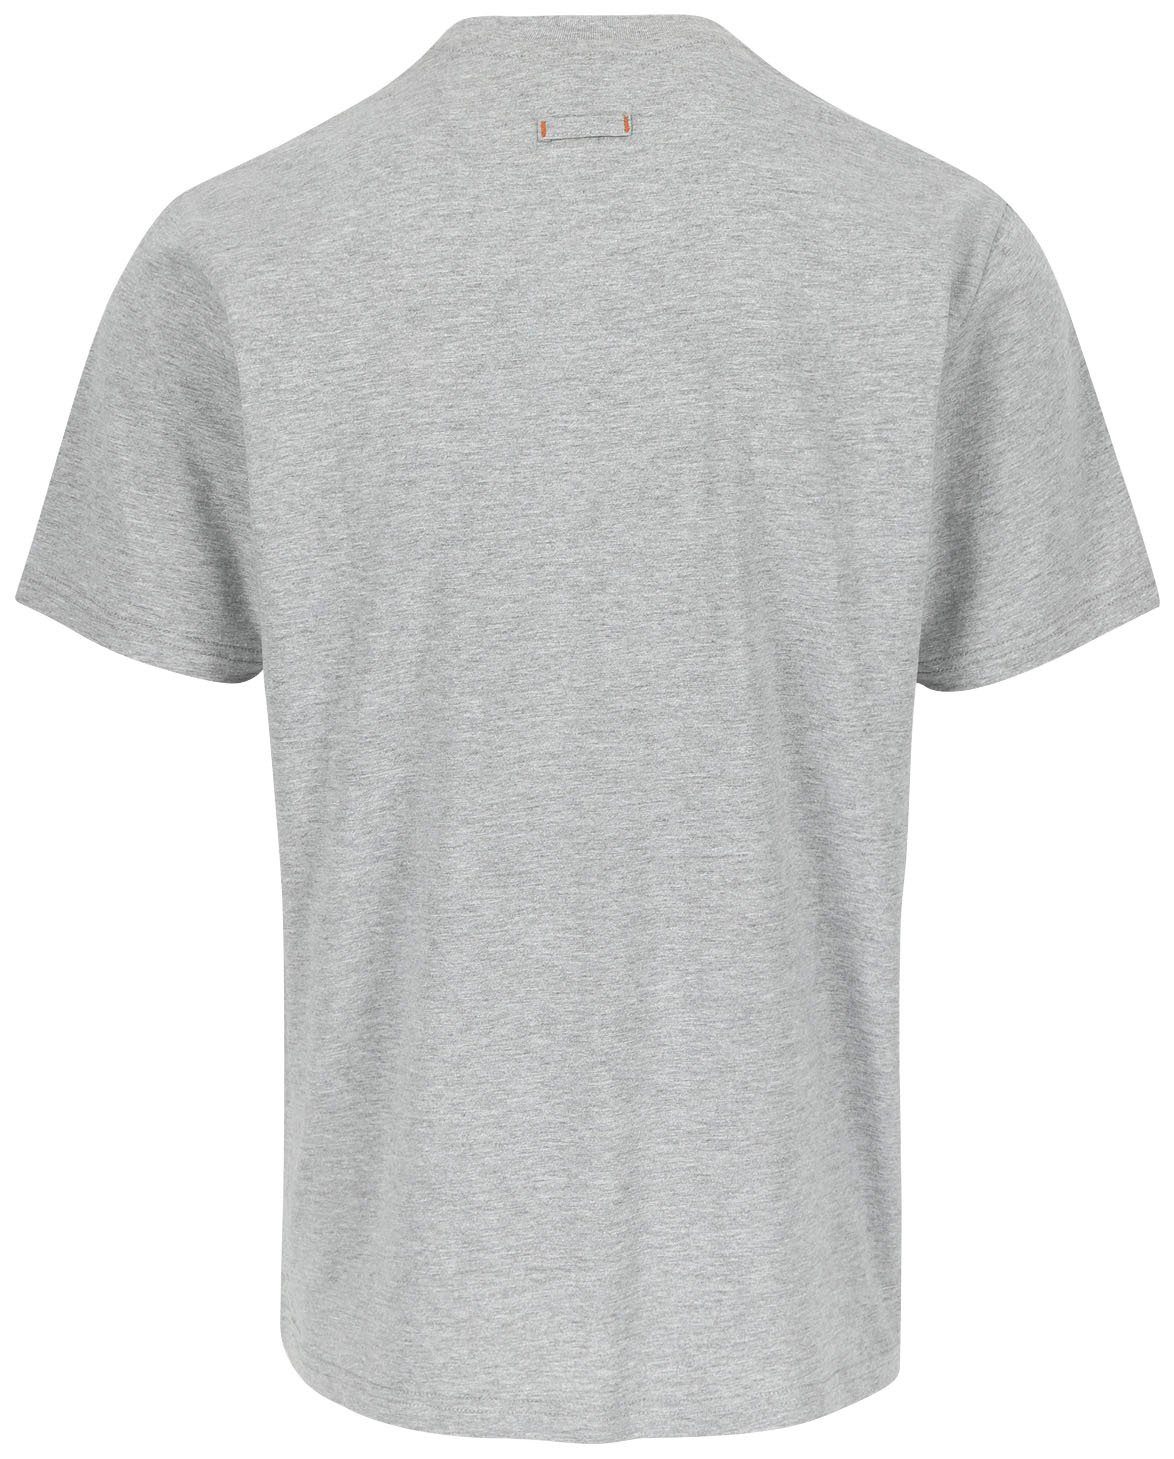 Baumwolle, Tragegefühl ENI T-Shirt Herock Rundhals, mit angenehmes grau Herock®-Aufdruck,